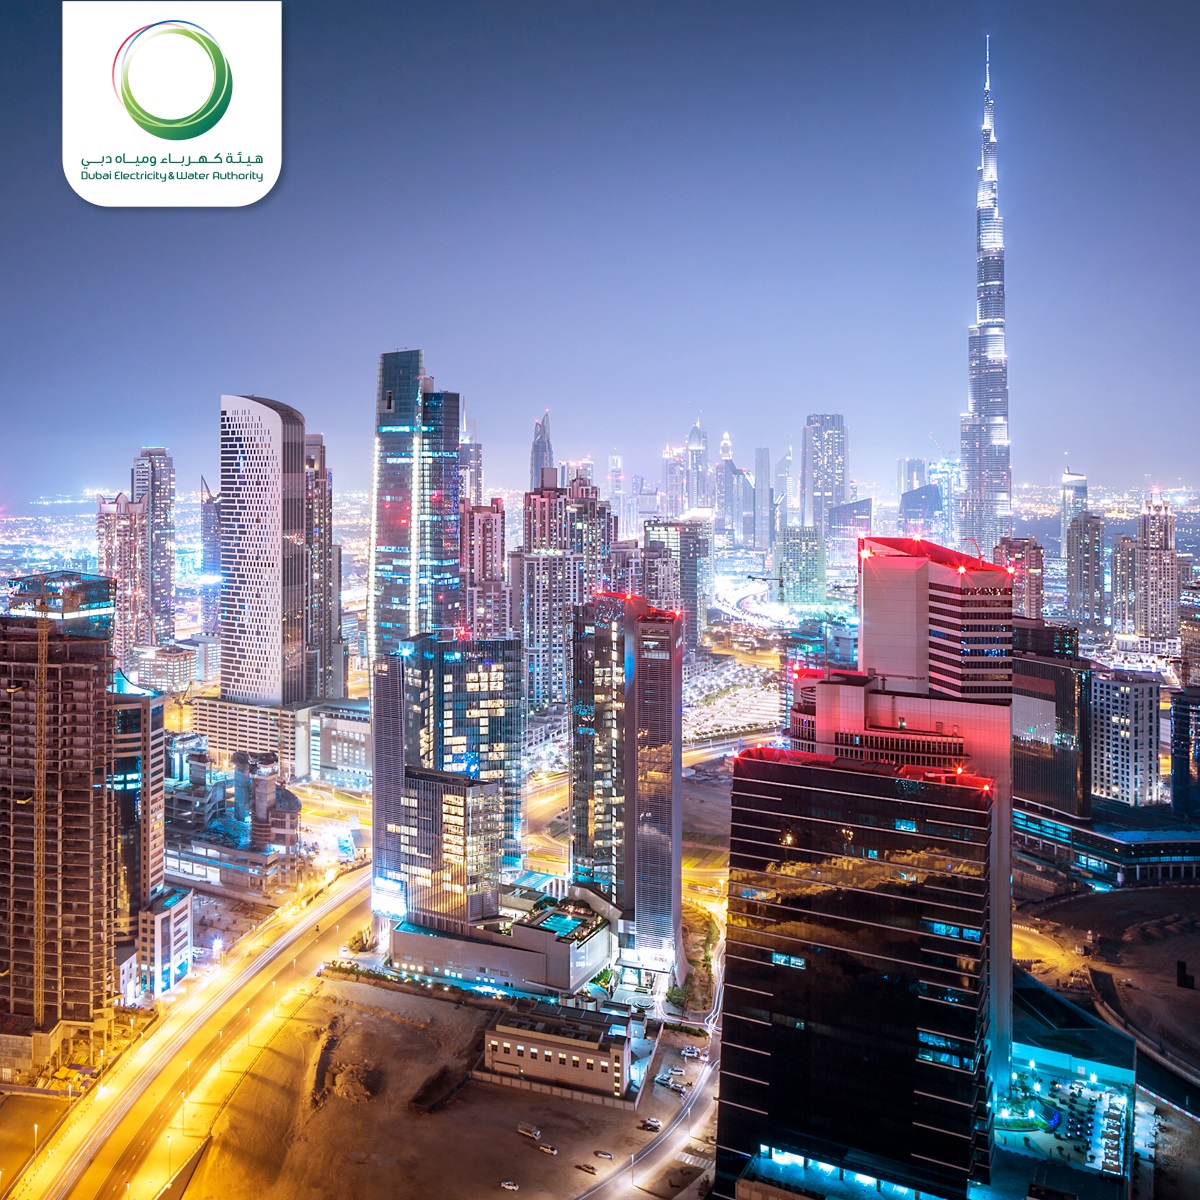 دولة الإمارات العربية المتحدة، ممثلة بهيئة كهرباء ومياه دبي، الأولى عالمياً في الحصول على الكهرباء وفق تقرير البنك الدولي 2018